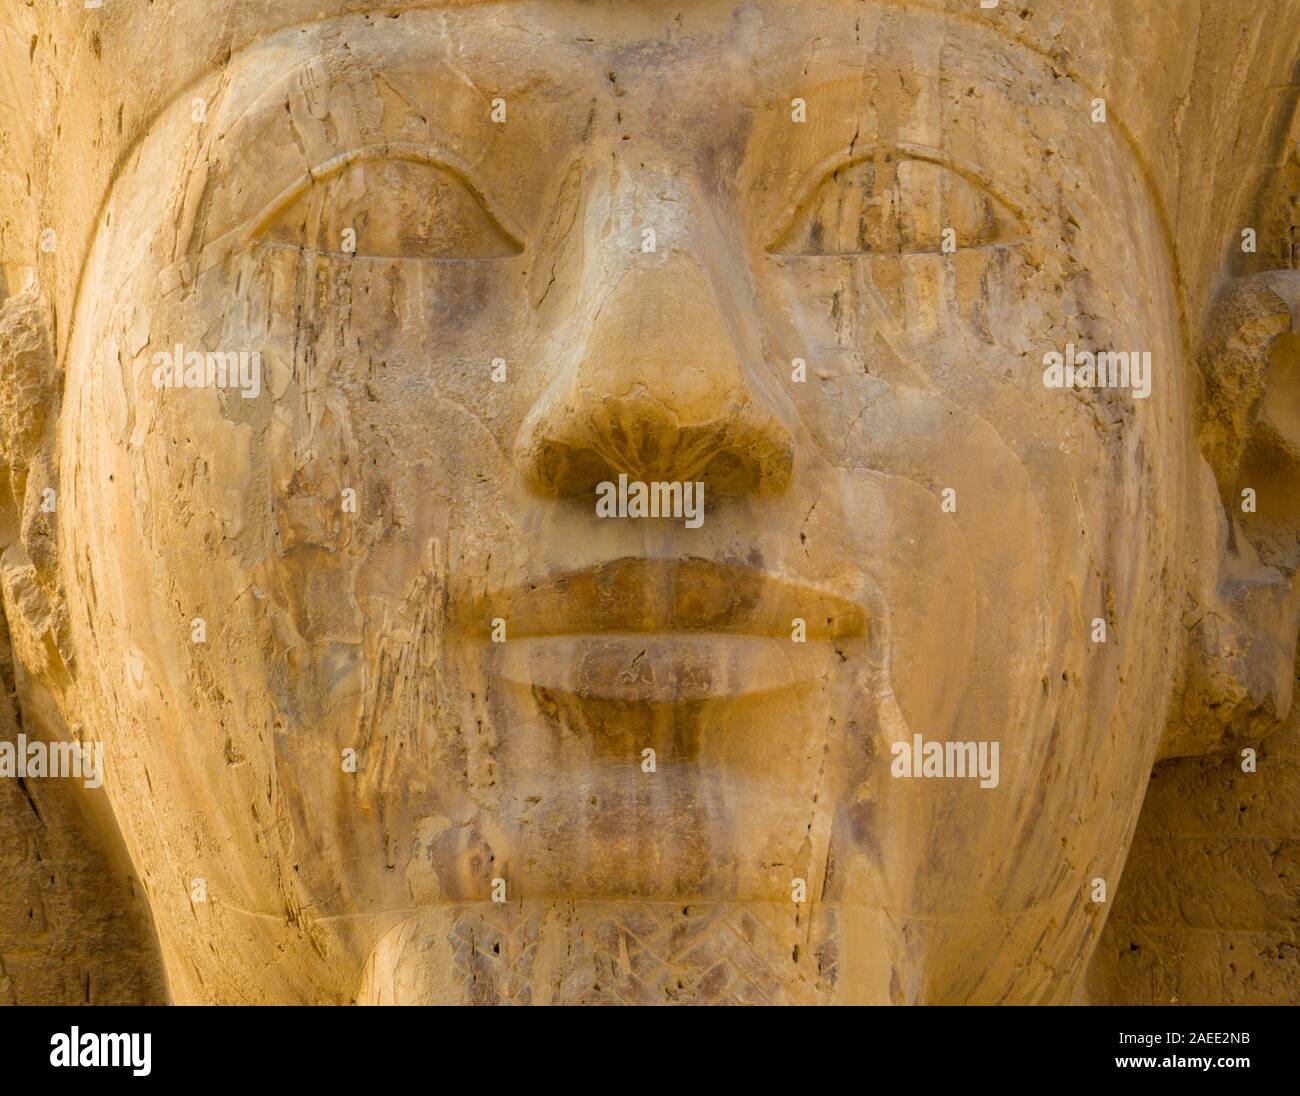 Sfinge di Memphis, Mit Rahina Museum, Memphis, Egitto Foto Stock